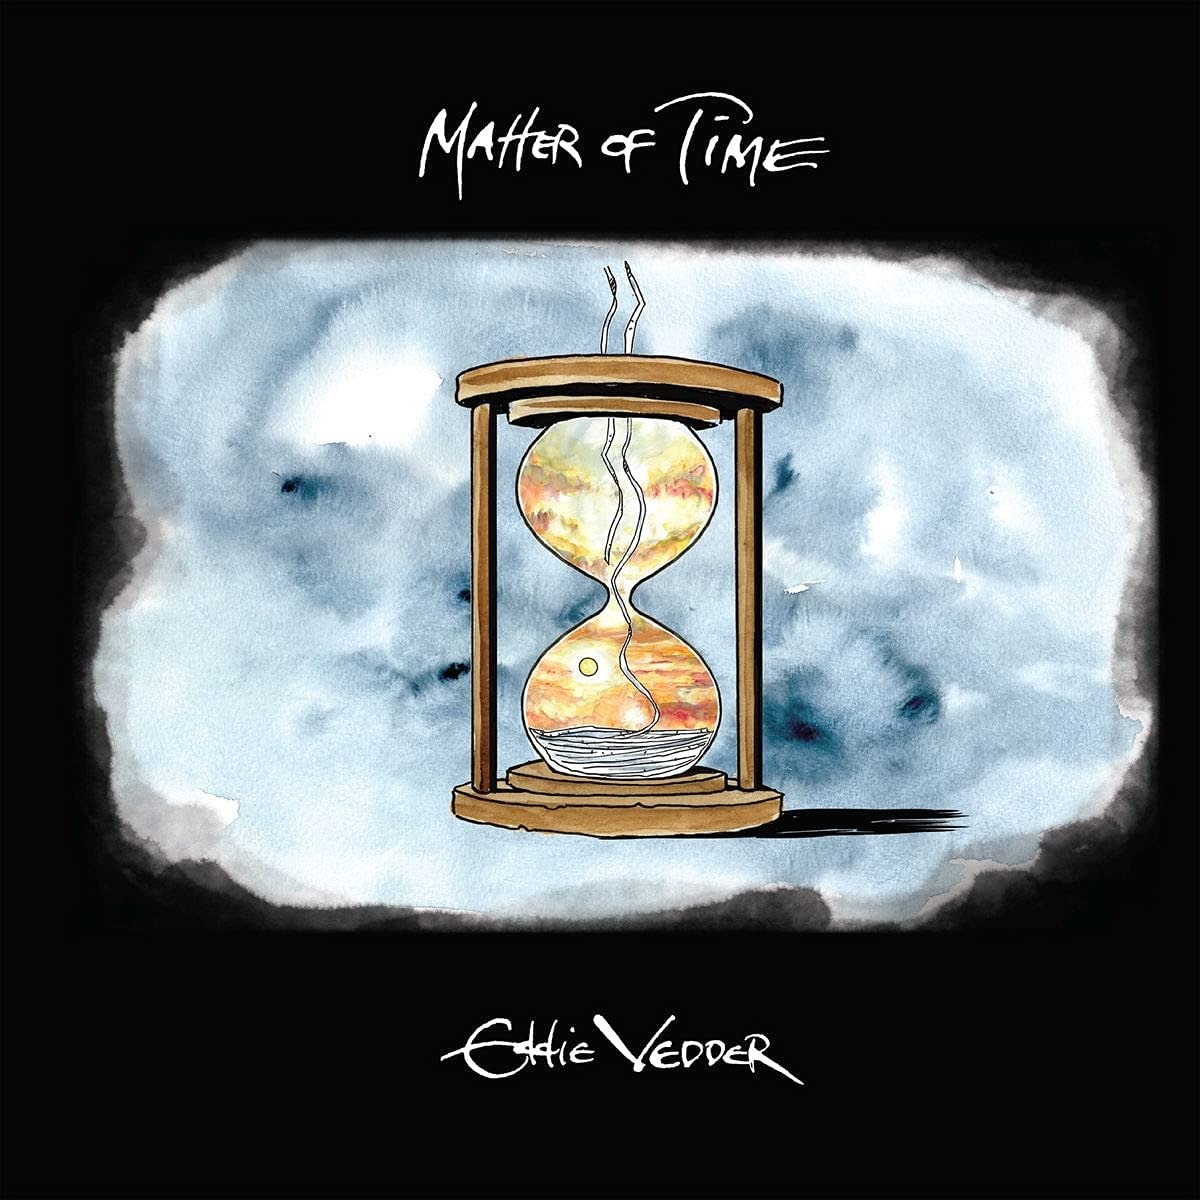 Eddie Vedder ‎– Matter Of Time